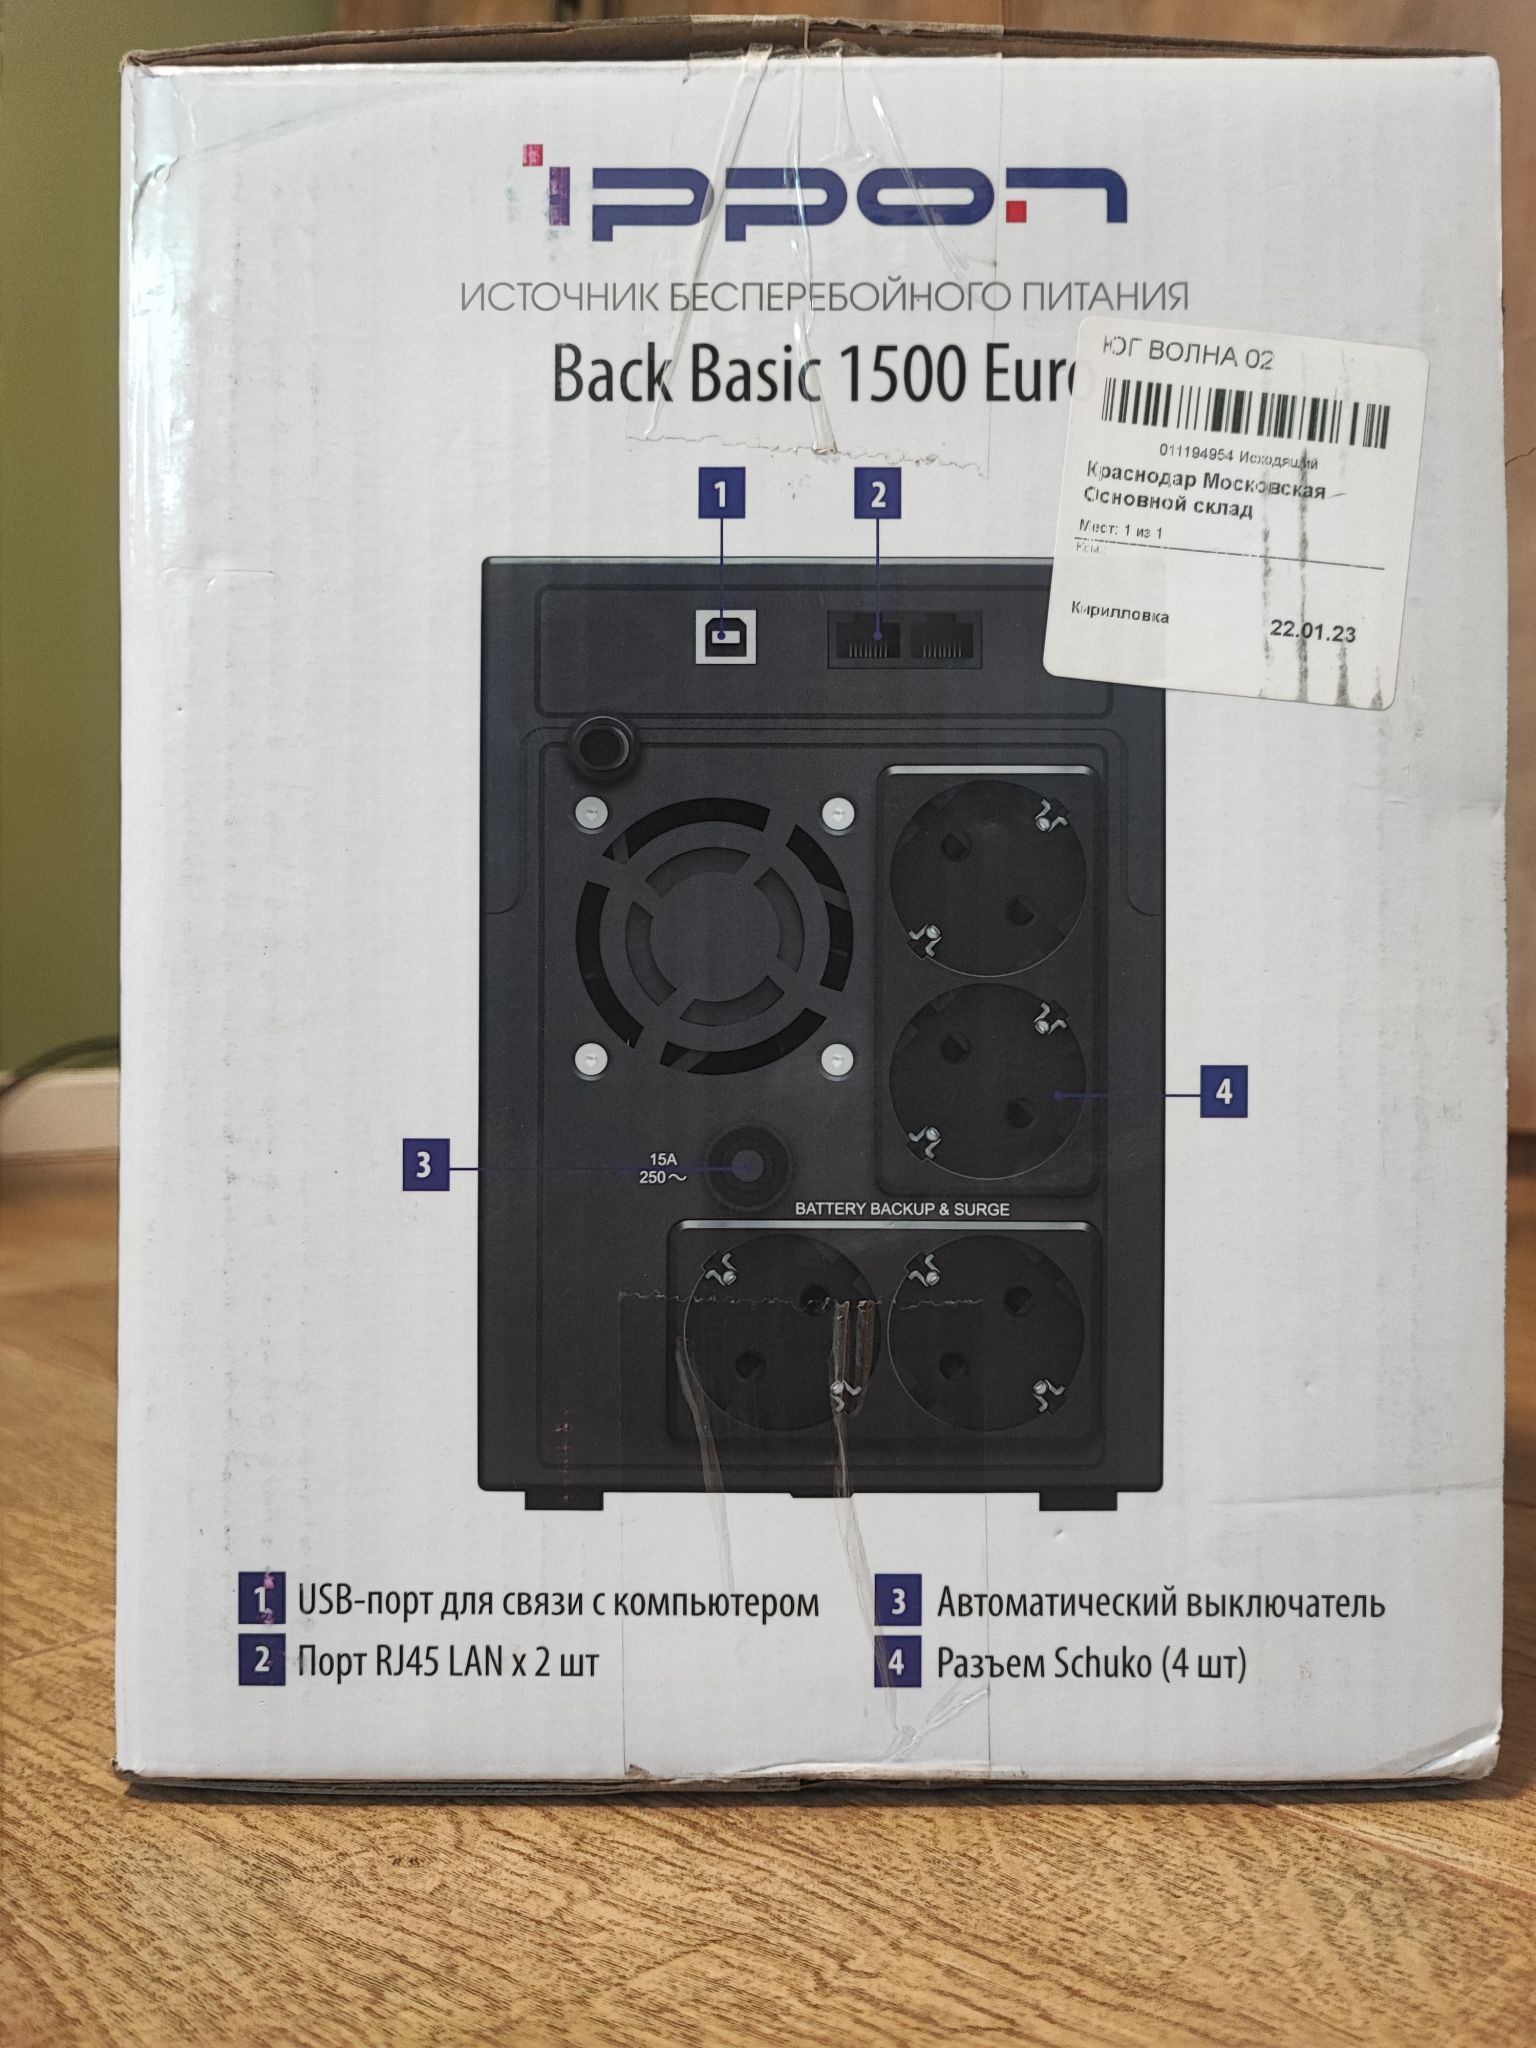 Ippon back Basic 2200 Euro. Back Basic 1500 Euro. Back Basic 1500 Euro отзывы. Ippon back Basic 1500. Back basic 1500